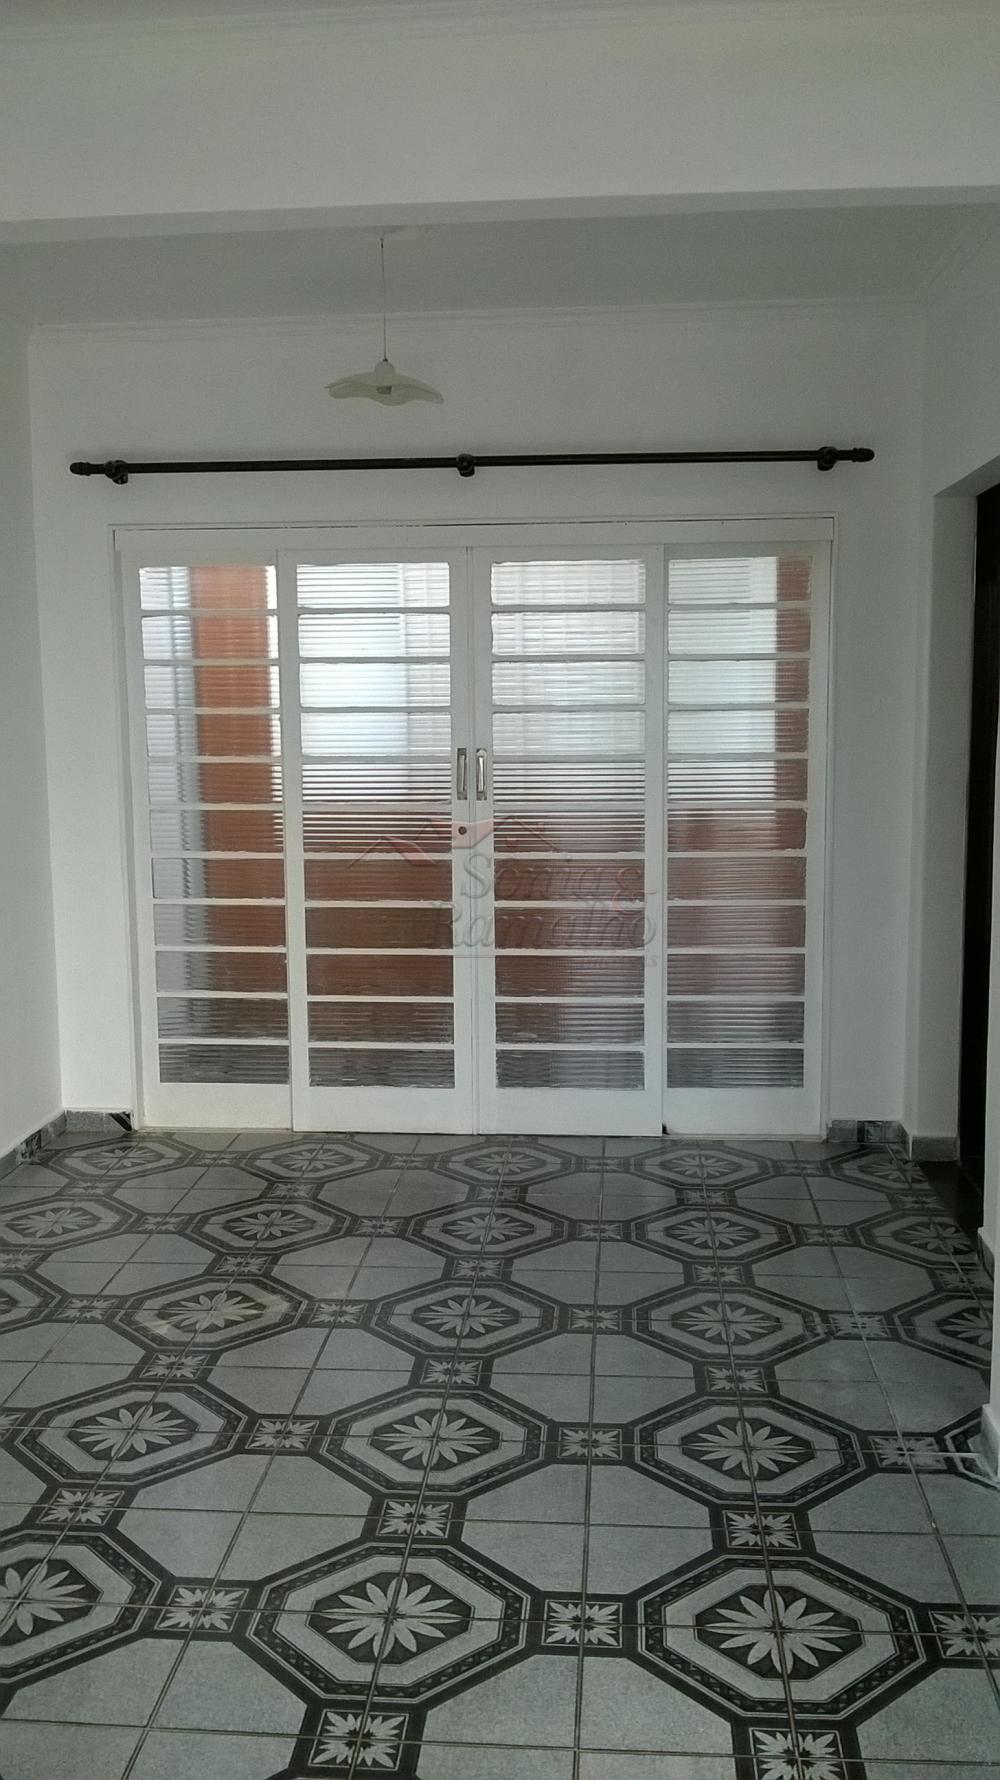 Alugar Casas / Padrão em Ribeirão Preto R$ 1.000,00 - Foto 1